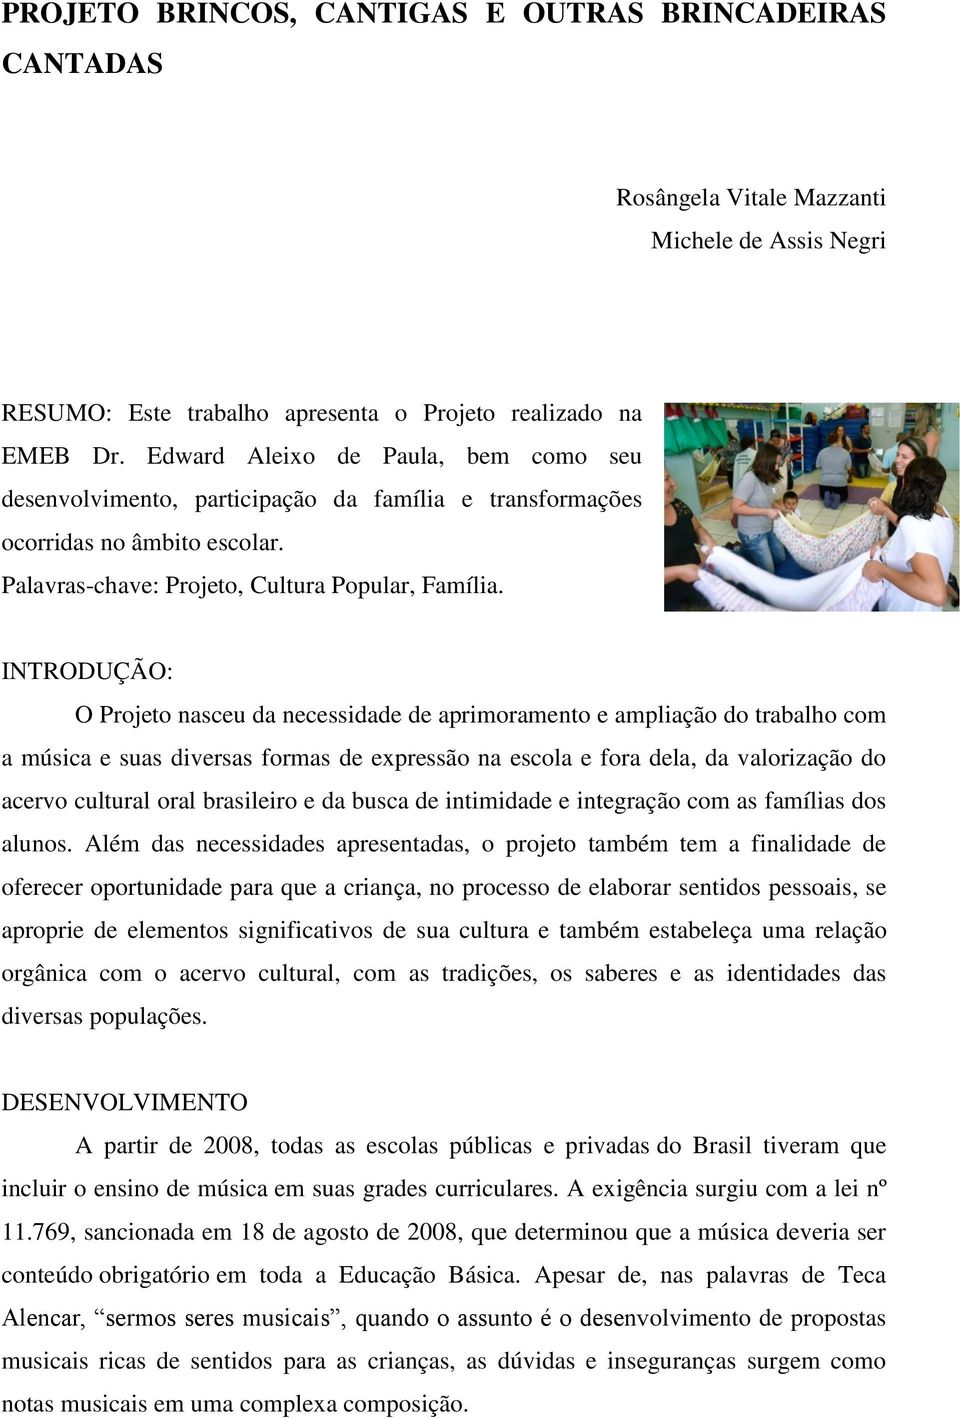 PROJETO BRINCOS, CANTIGAS E OUTRAS BRINCADEIRAS CANTADAS - PDF Free Download